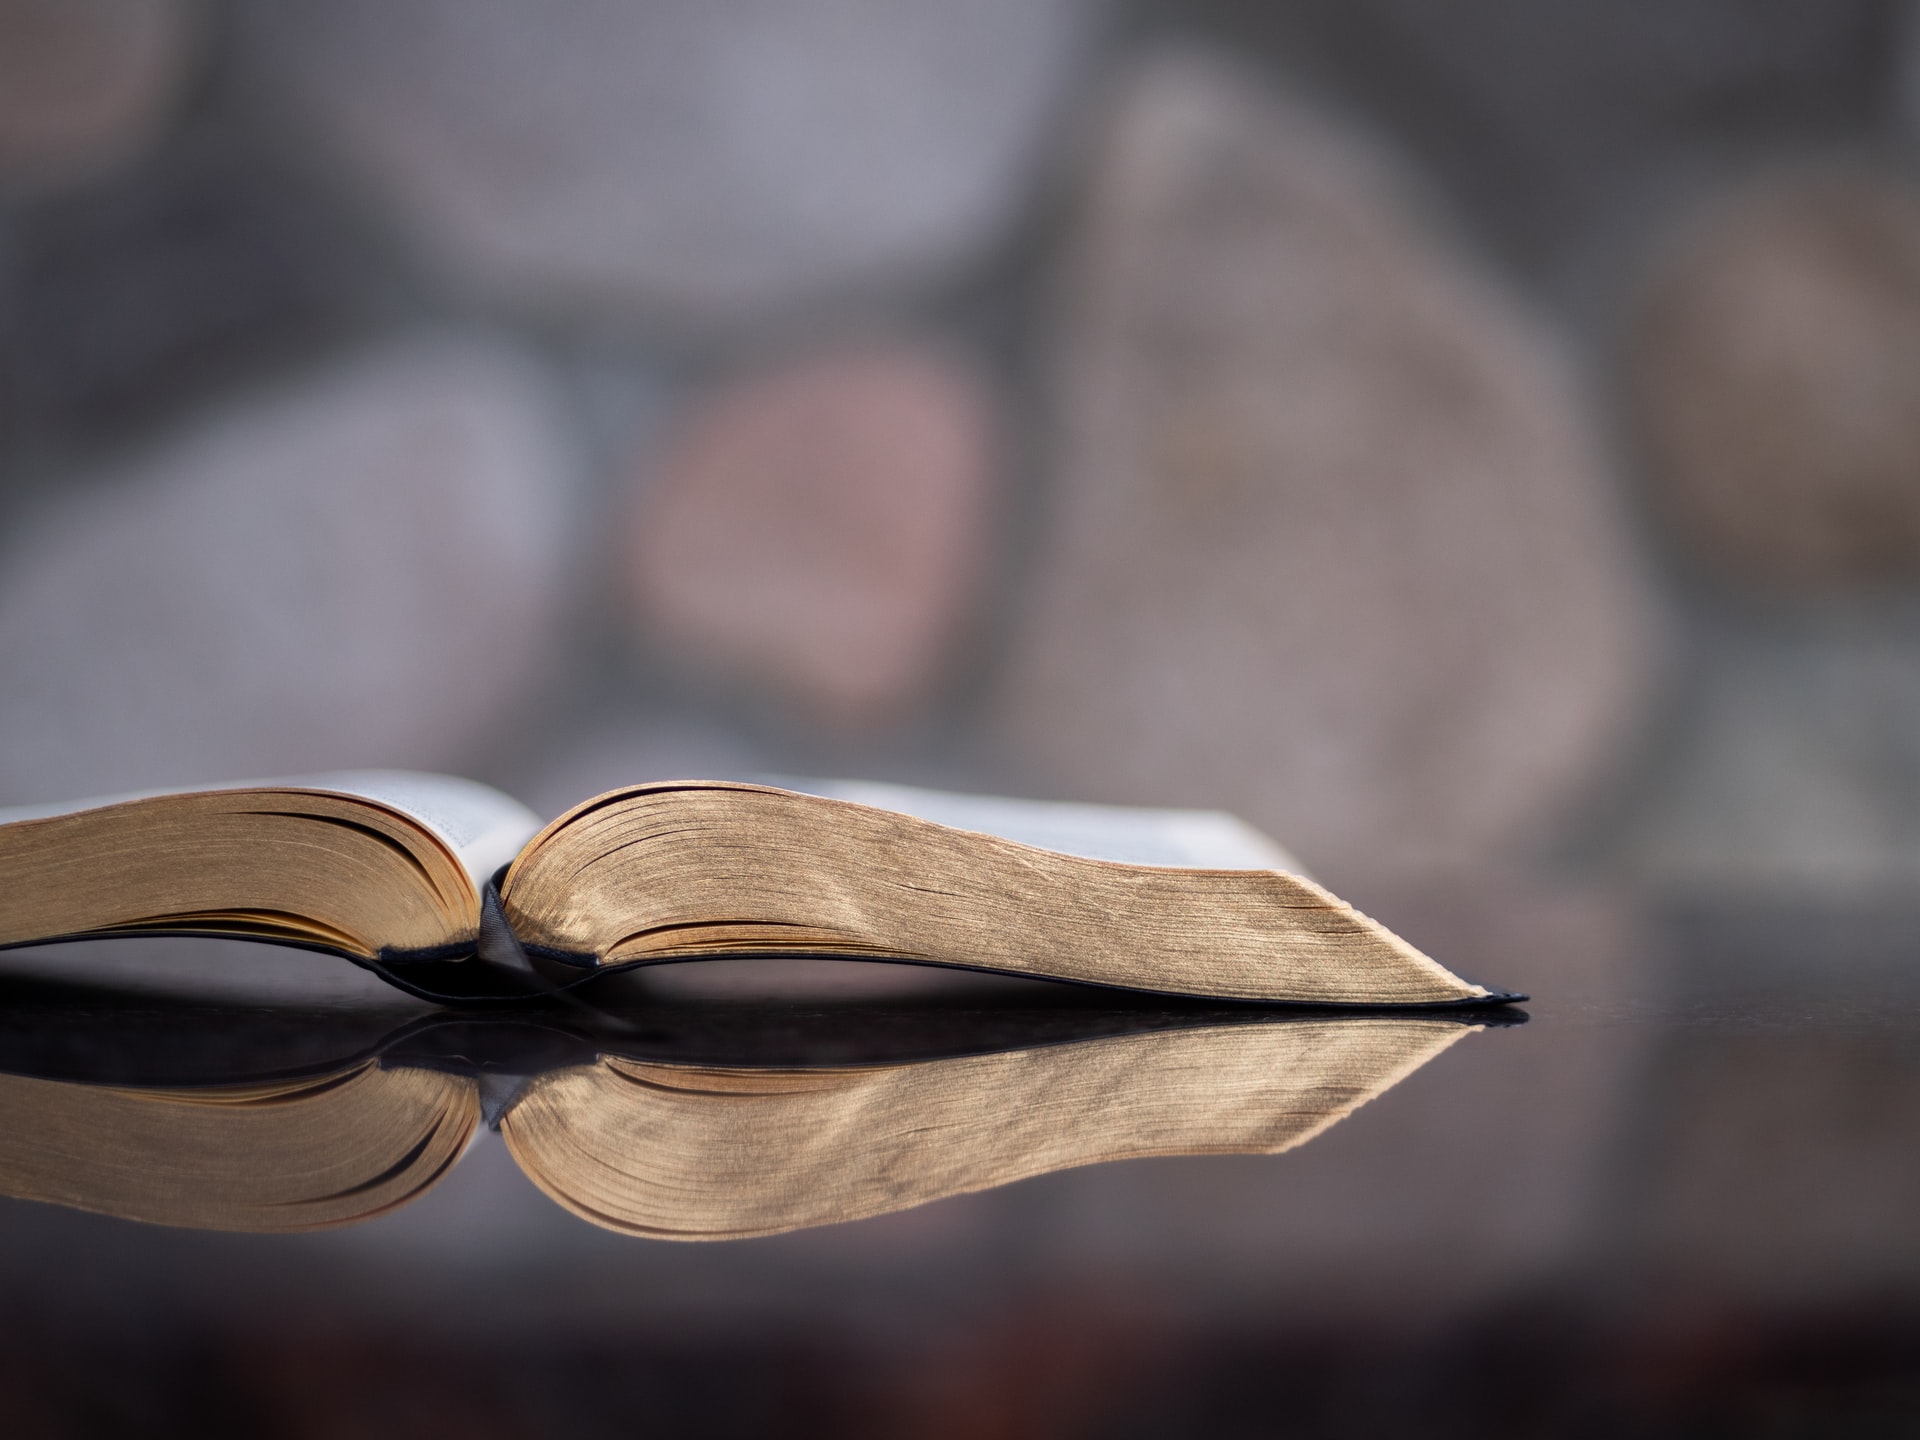 Uppslagen bibel liggande på en spegel